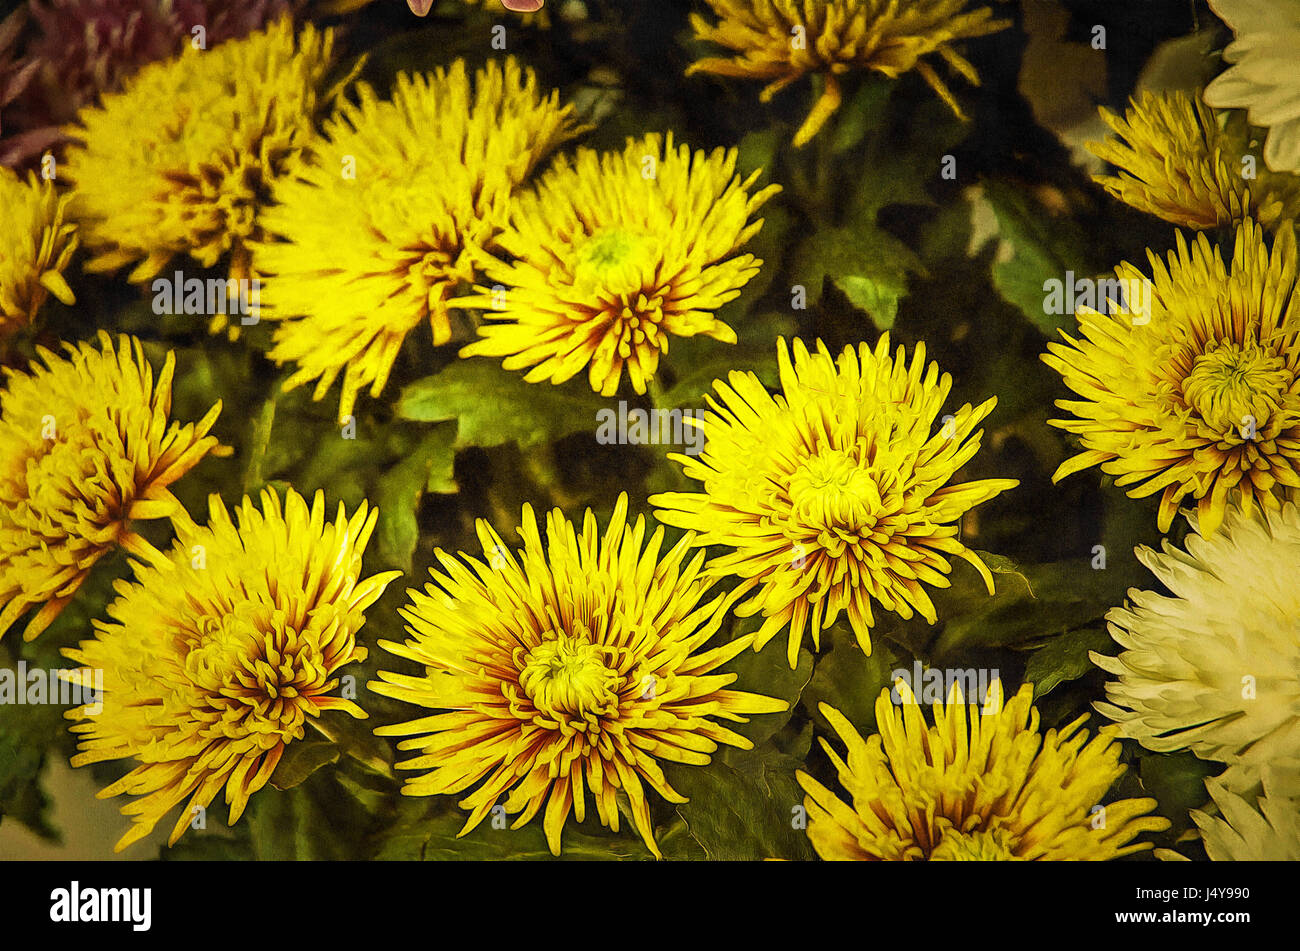 Illustrationen Blumen Chrysantheme, Chrysanthemen (lateinisch  Chrysánthemum) - Gattung und mehrjährige krautige Pflanzen in der Familie  Asteraceae Stockfotografie - Alamy